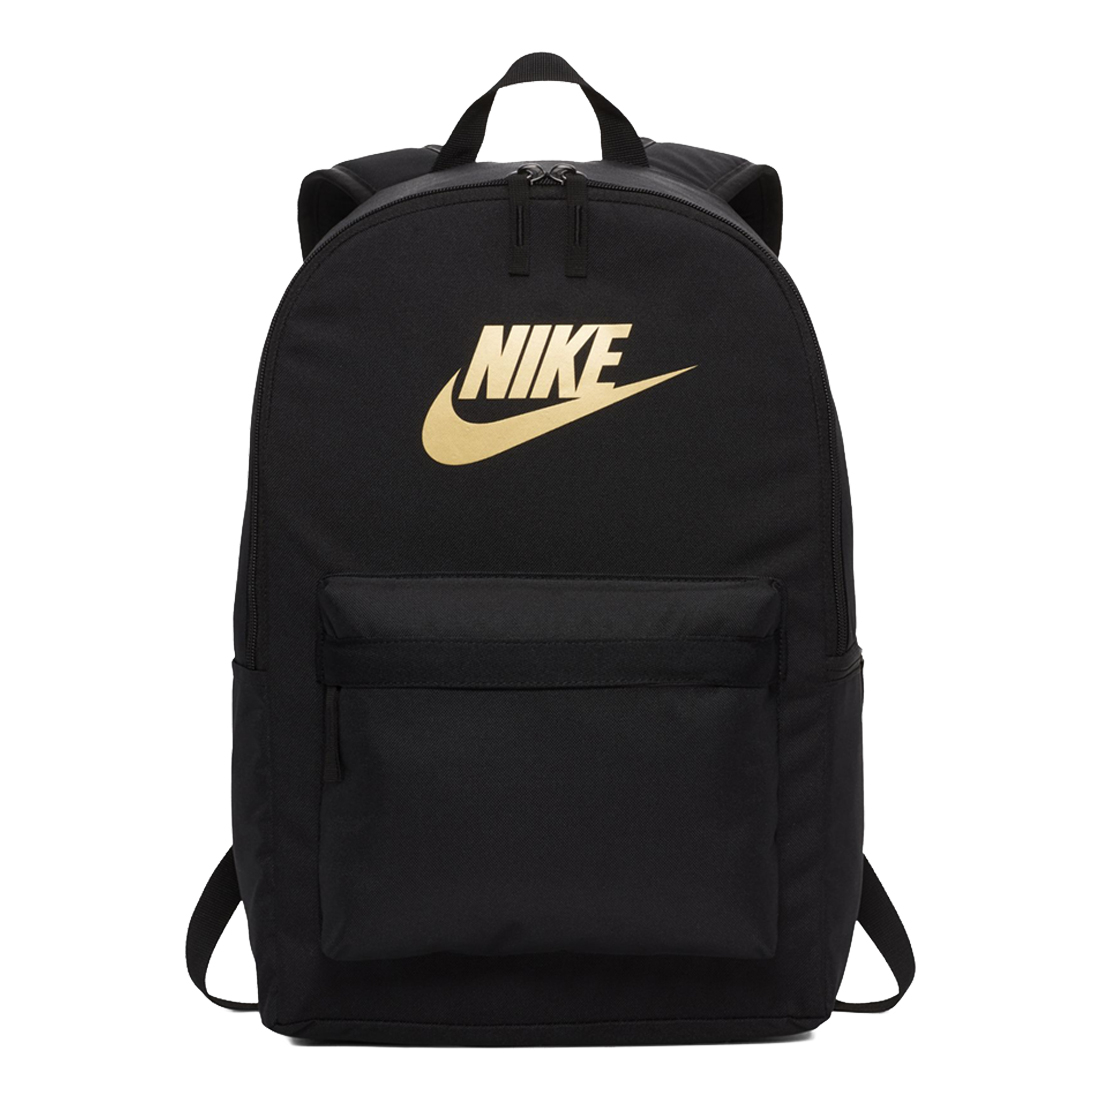 ★現貨在庫★ Nike Heritage 2.0 背包 後背包 休閒 金LOGO 黑【運動世界】BA5879-013